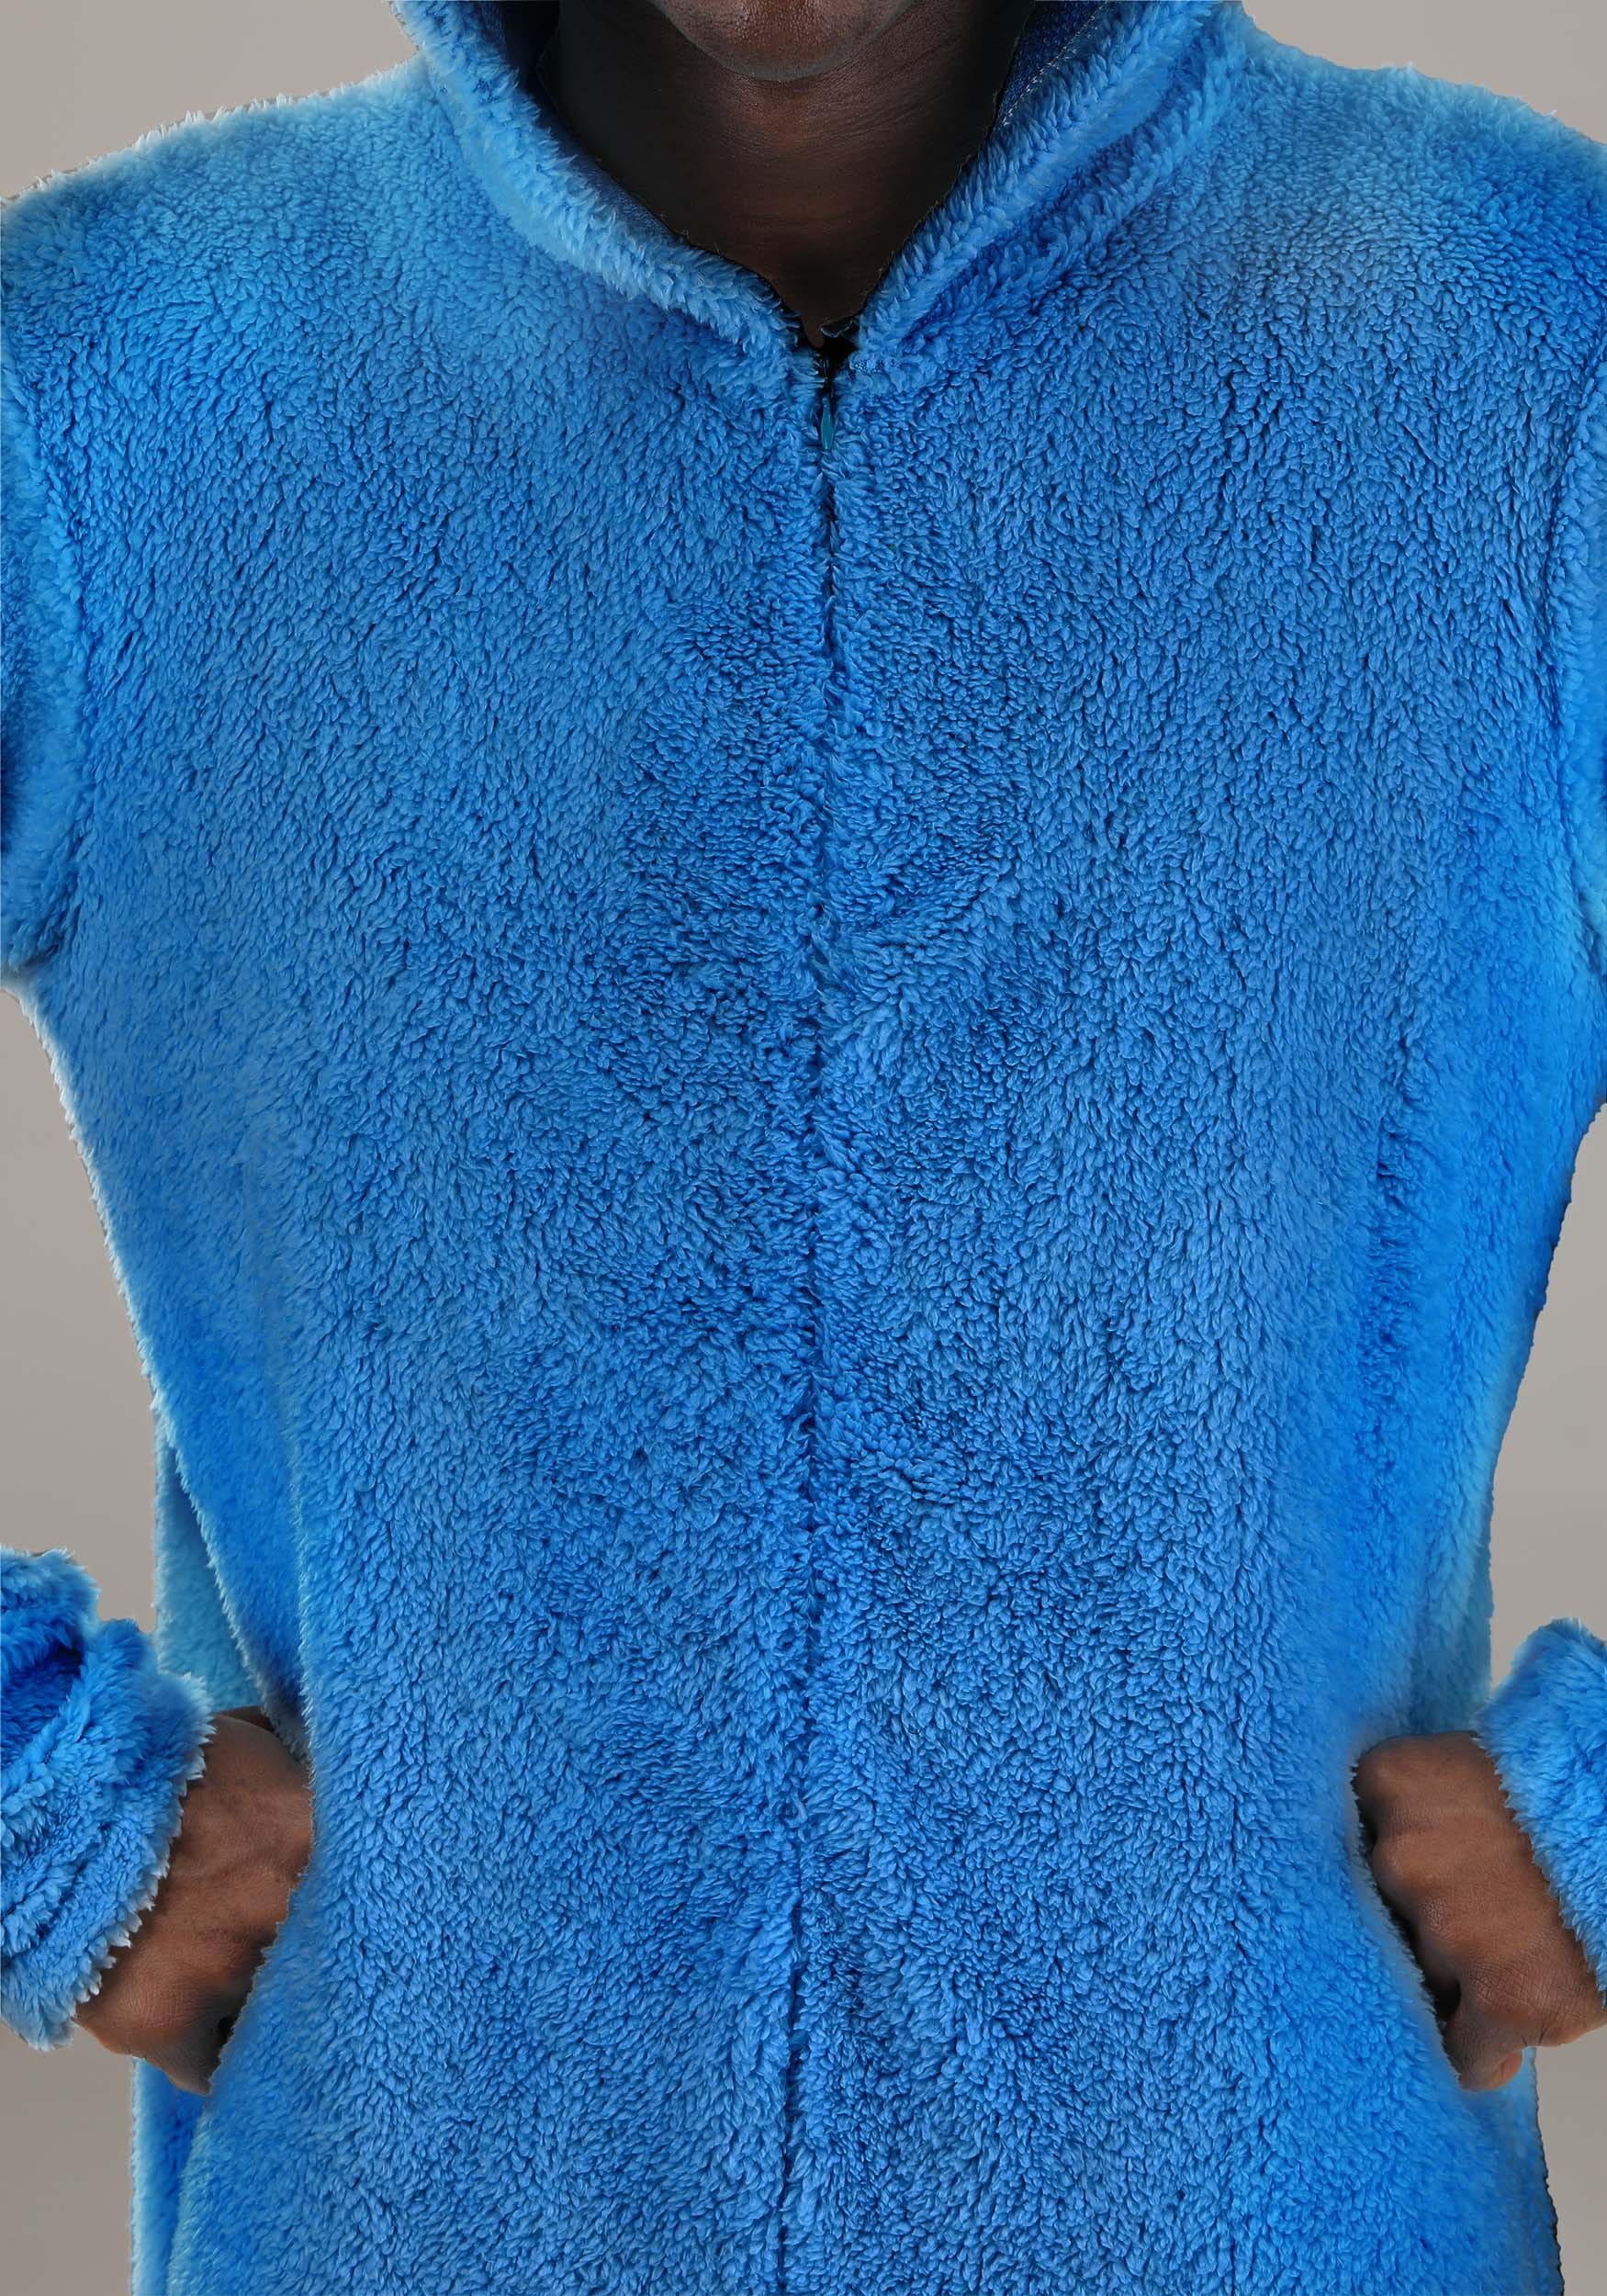 Sesame Street Grover Jumpsuit Adult Costume